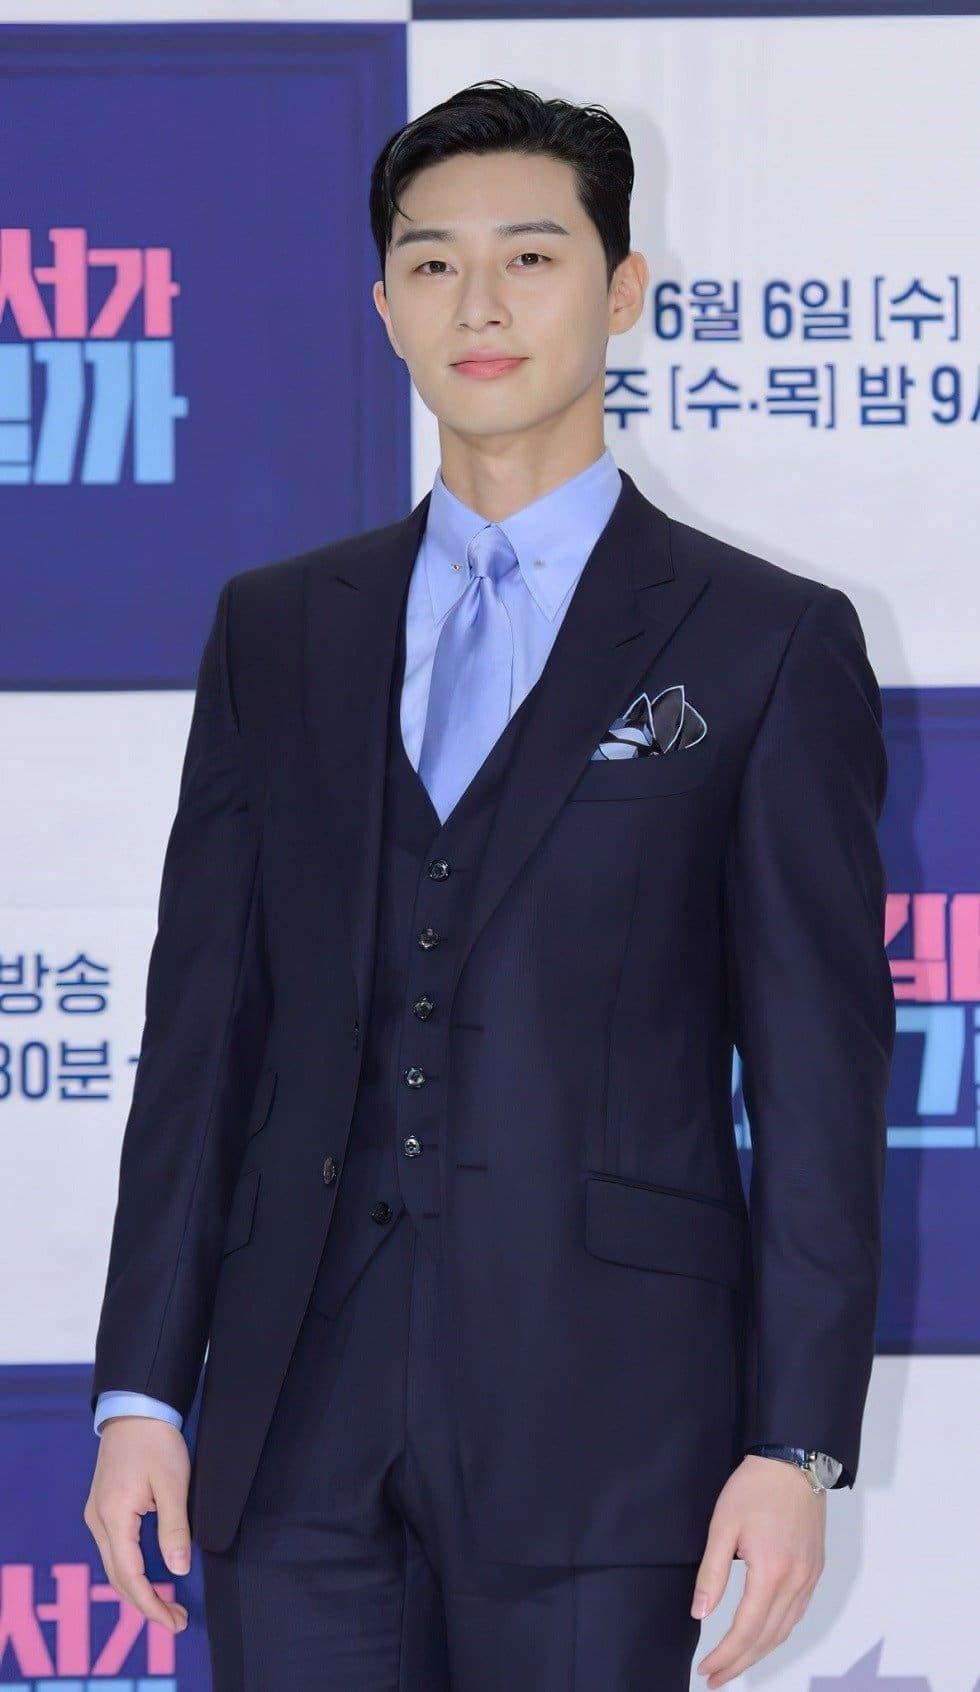 Park Seo Joon là một trong những mỹ nam Hàn Quốc diện suit đẹp nhất theo tạp chí "25ans" của Nhật Bản bình chọn. Sở hữu chiều cao 1m85 và tỷ lệ cơ thể cân đối, ngôi sao sinh năm 1988 từng khiến fangirl "điên đảo" khi diện suit trong các bộ phim đề tài công sở. (Nguồn: Internet)